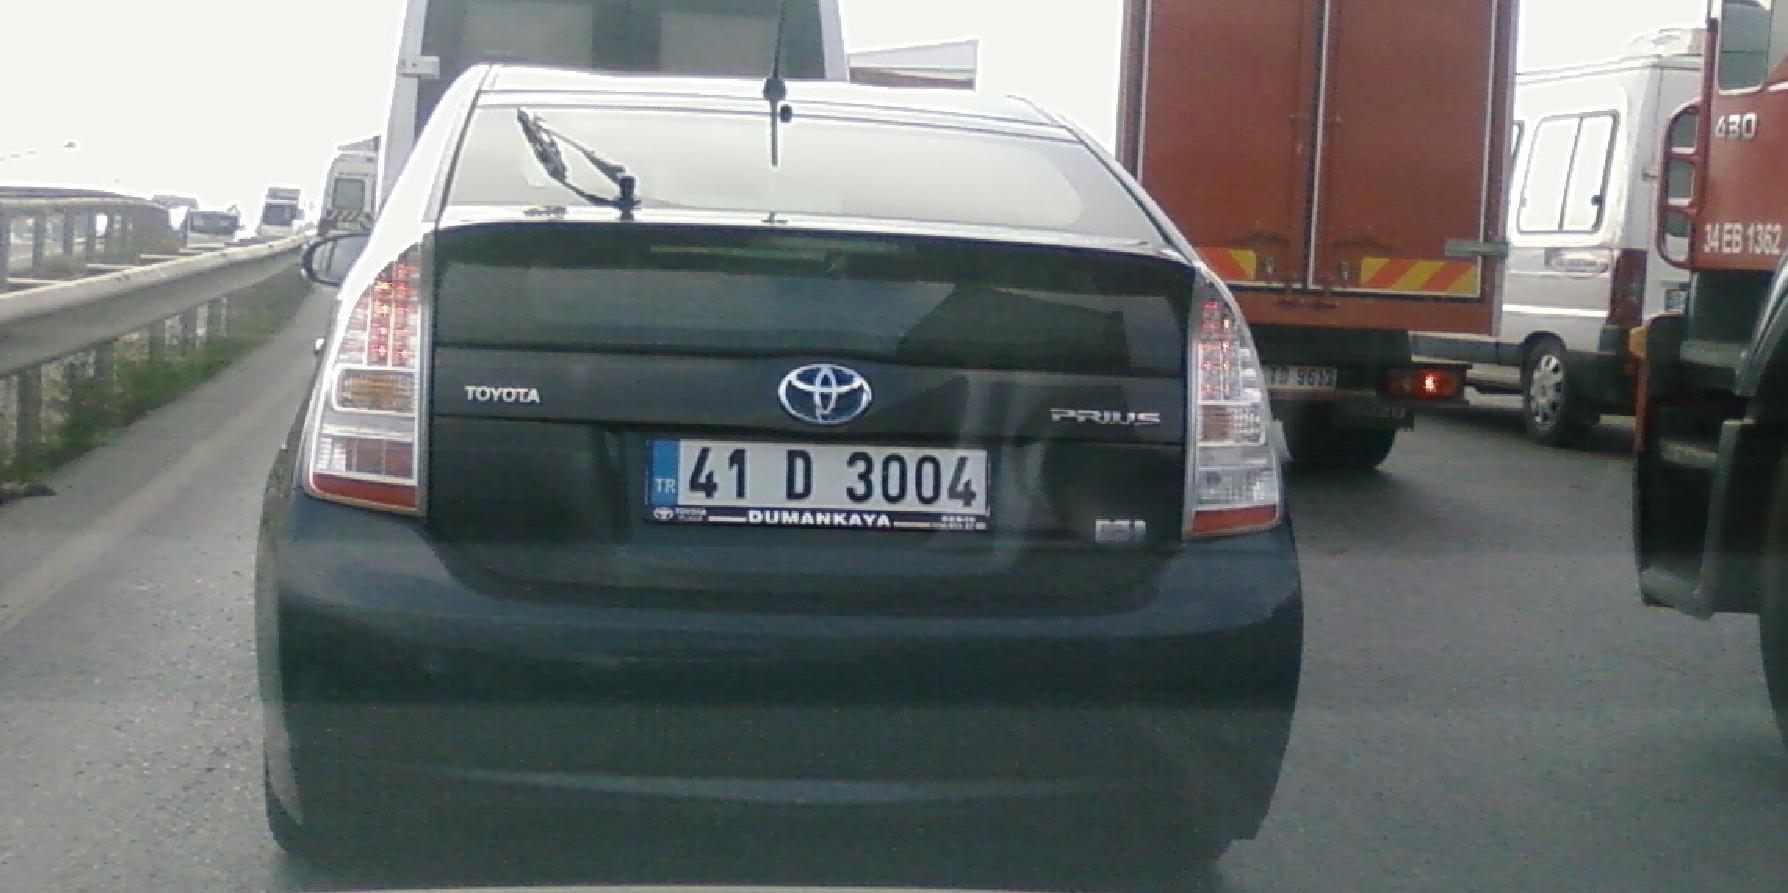  Toyota Prius Resmen Yazın Türkiyede : )